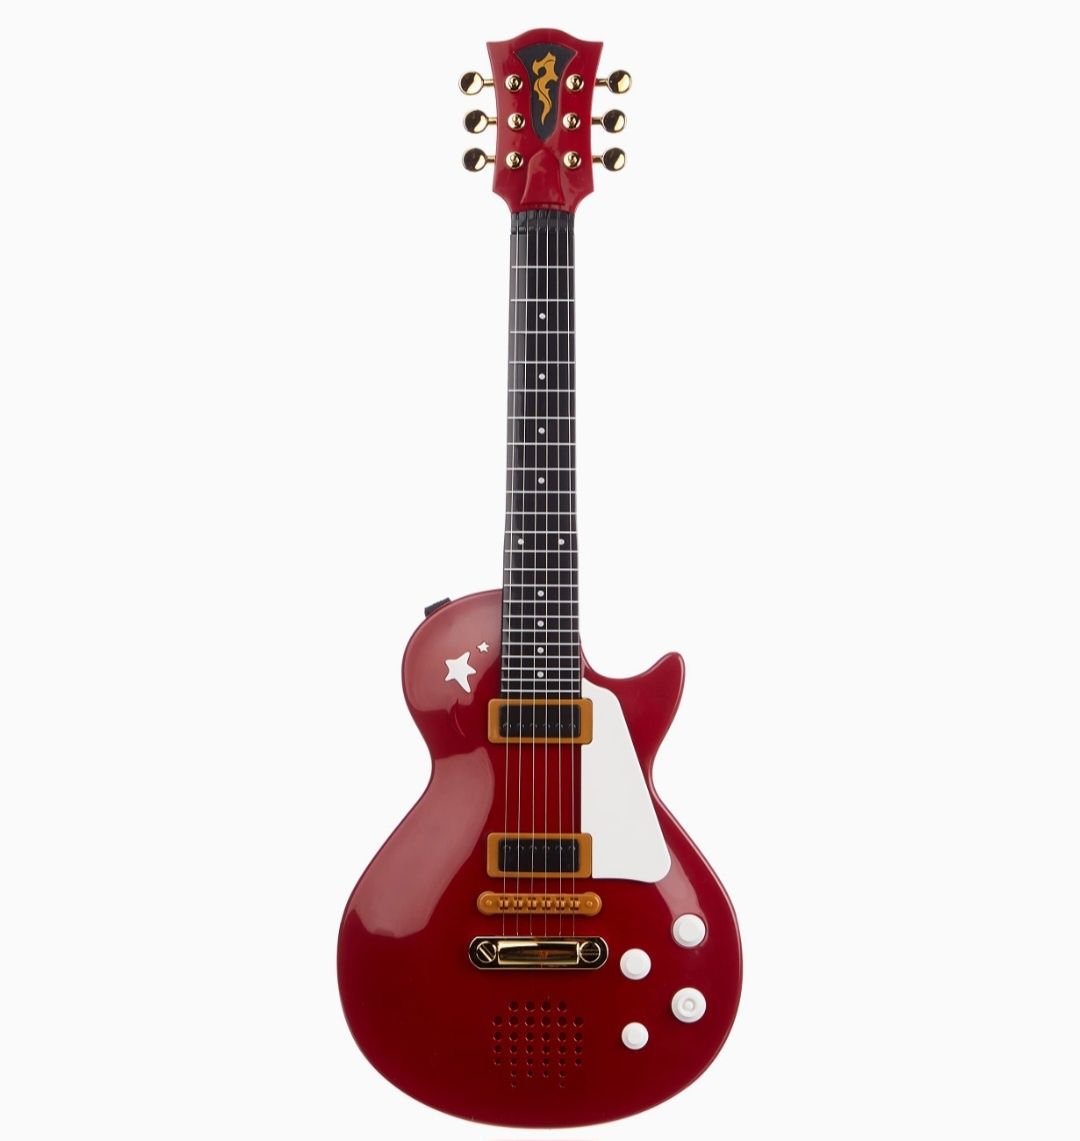 Simba gitara rockowa z metalowymi strunami  czerwona